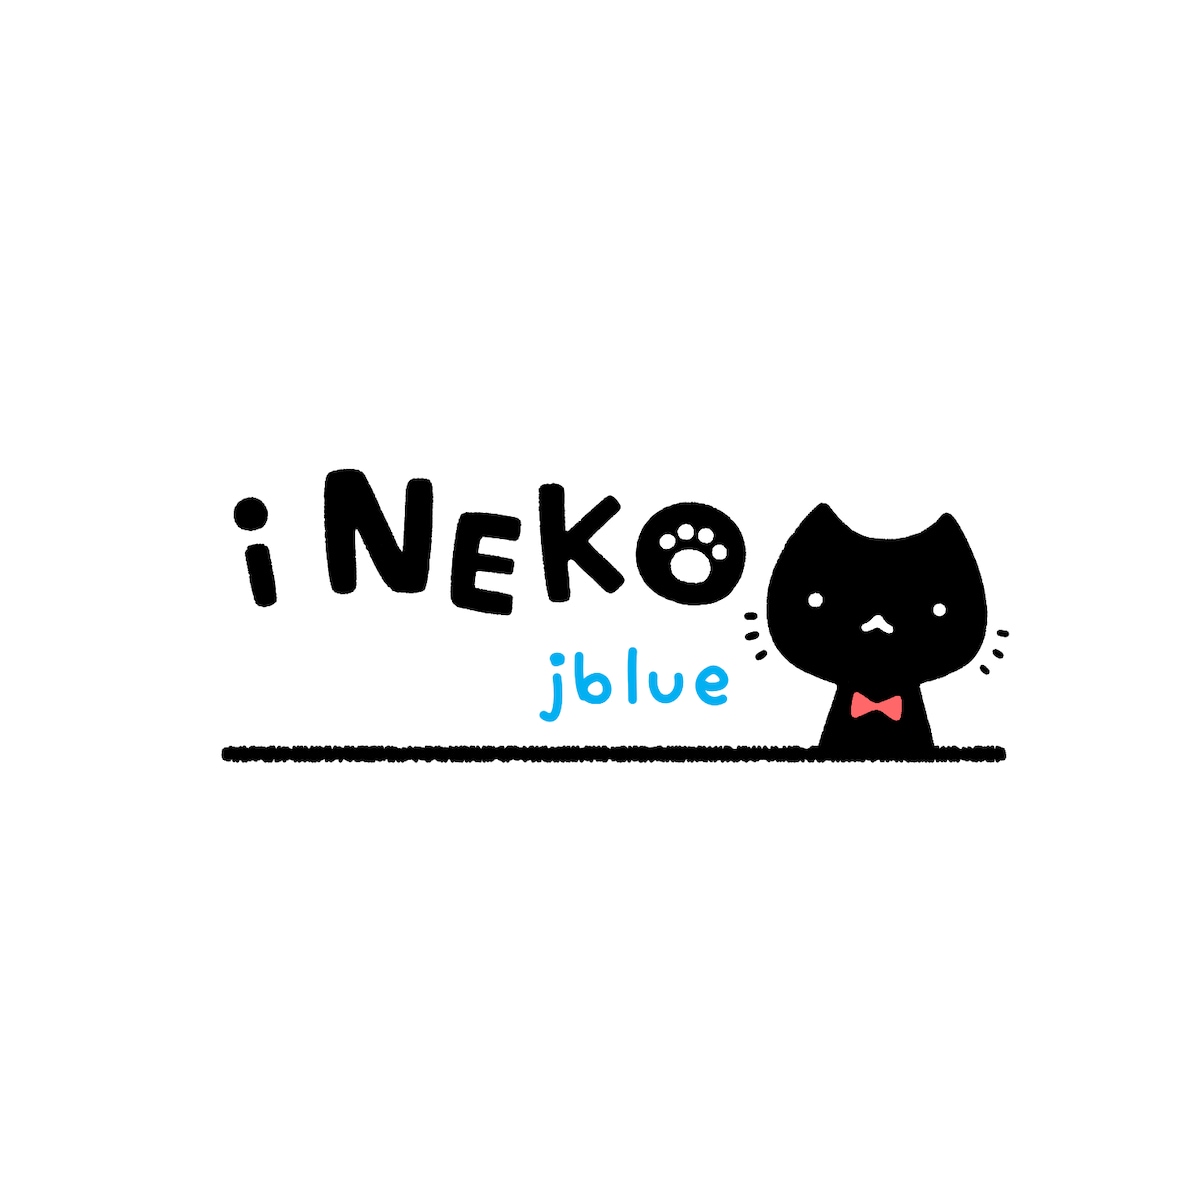 抗菌スプレー『i NEKO』パッケージ用ロゴデザイン